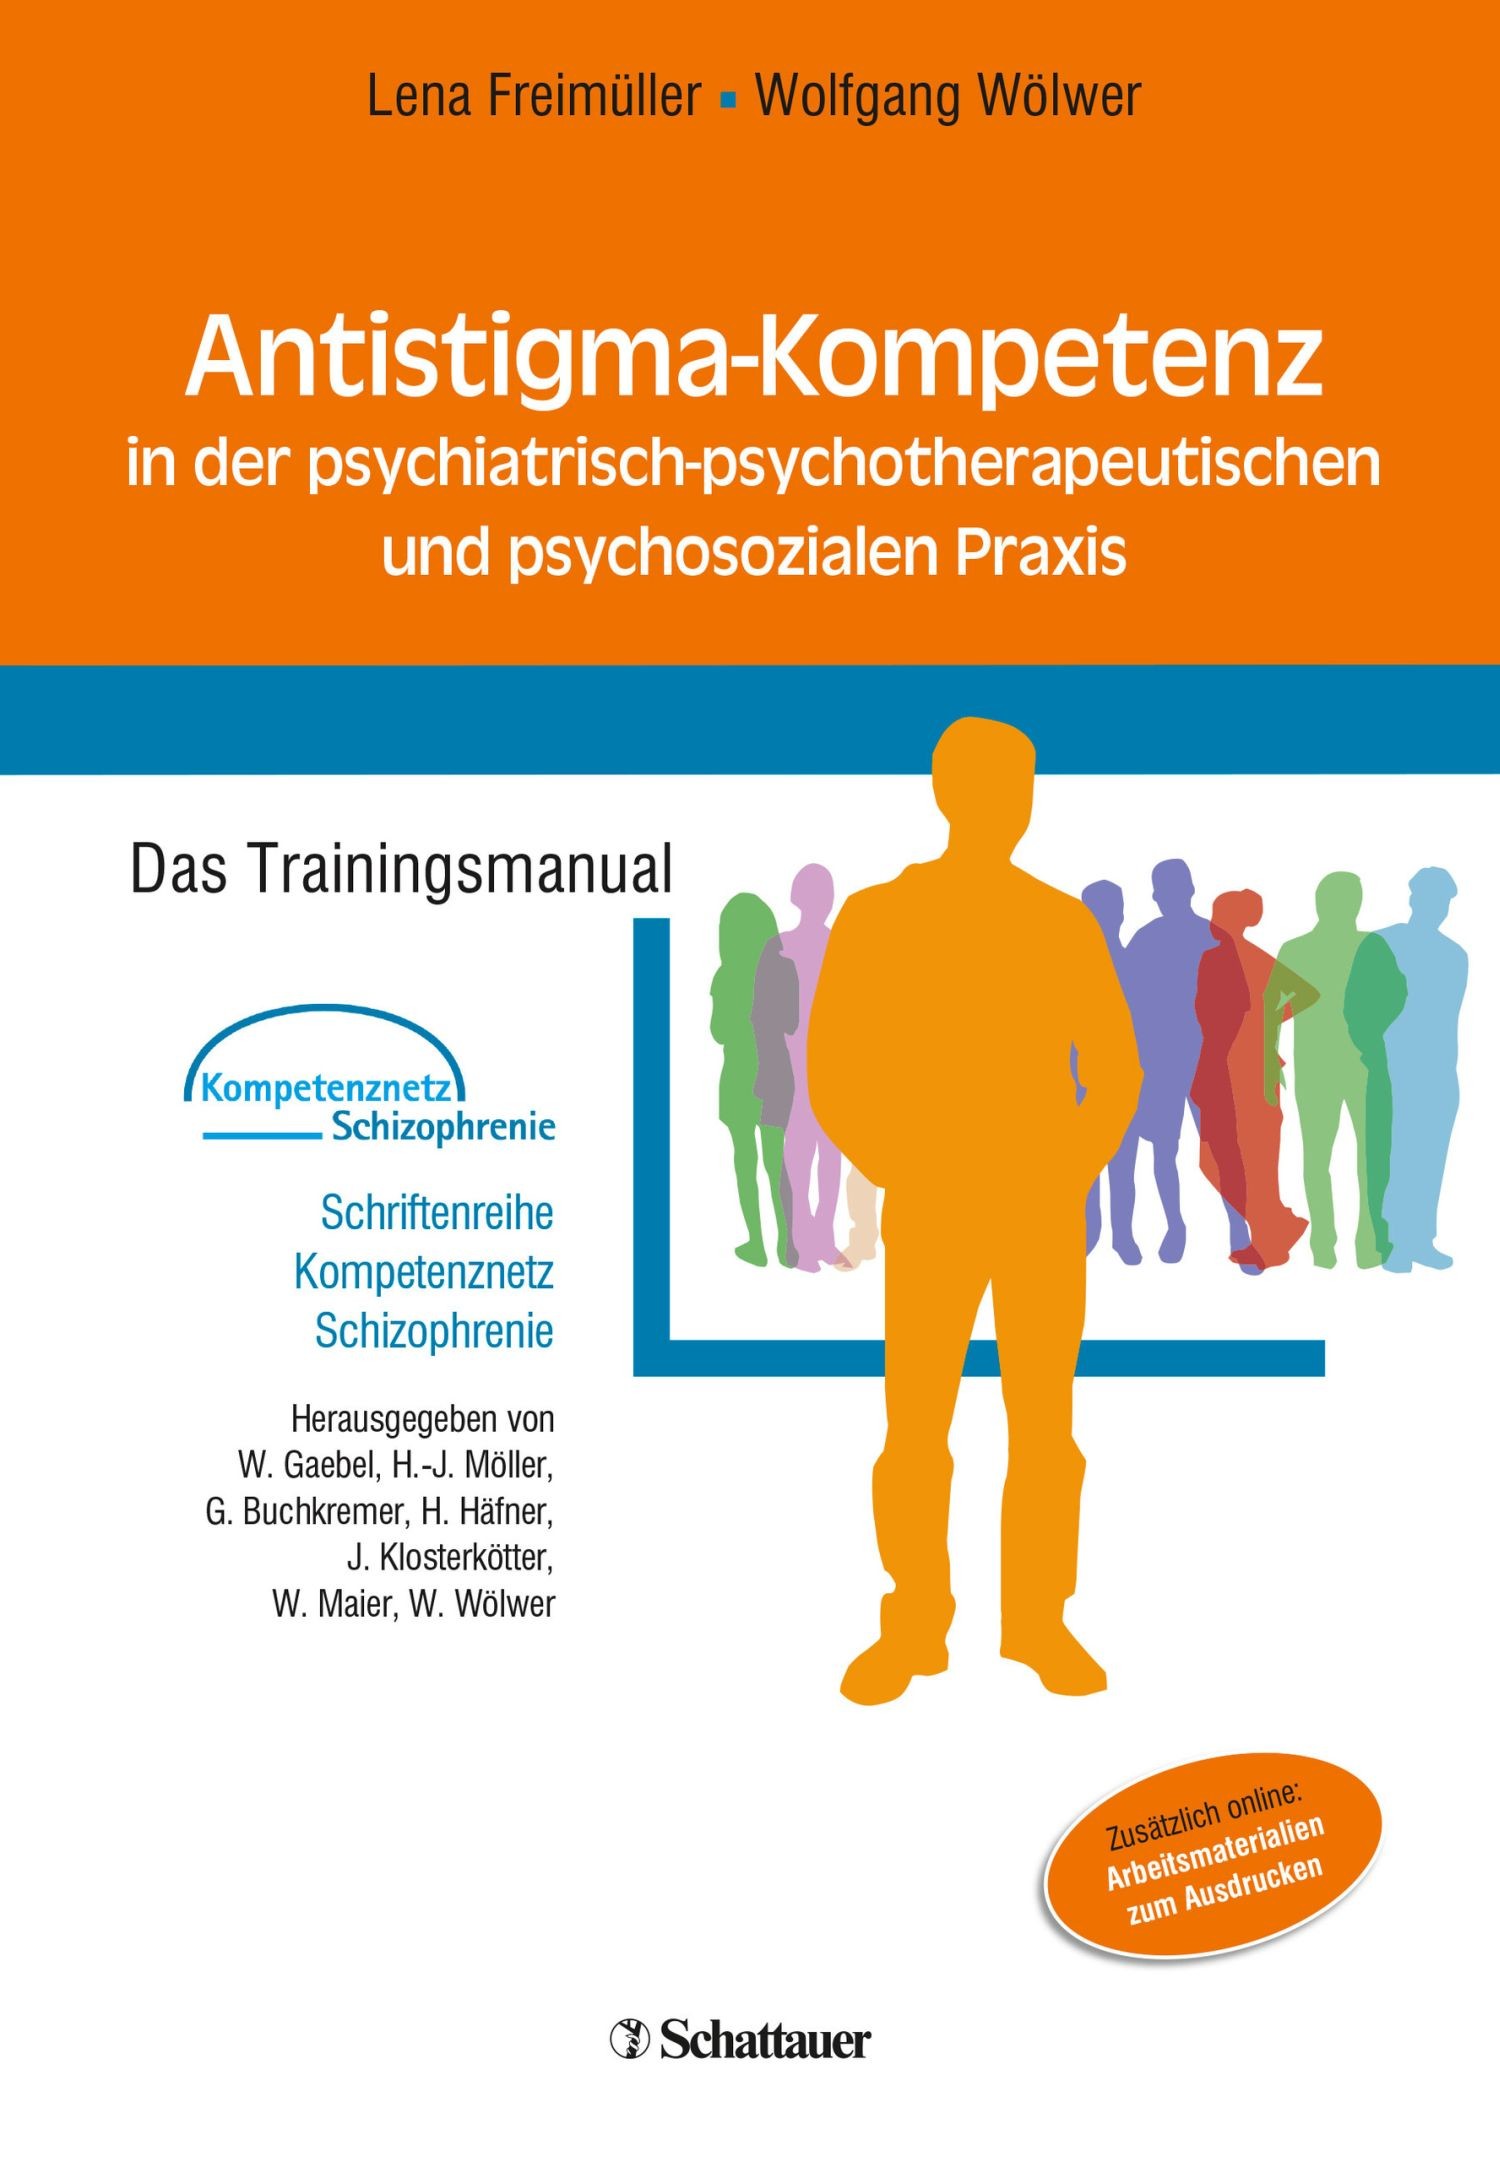 Antistigma-Kompetenz in der psychiatrisch-psychotherapeutischen und psychosozialen Praxis (Schriftenreihe Kompetenznetz Schizophrenie, Bd. ?)